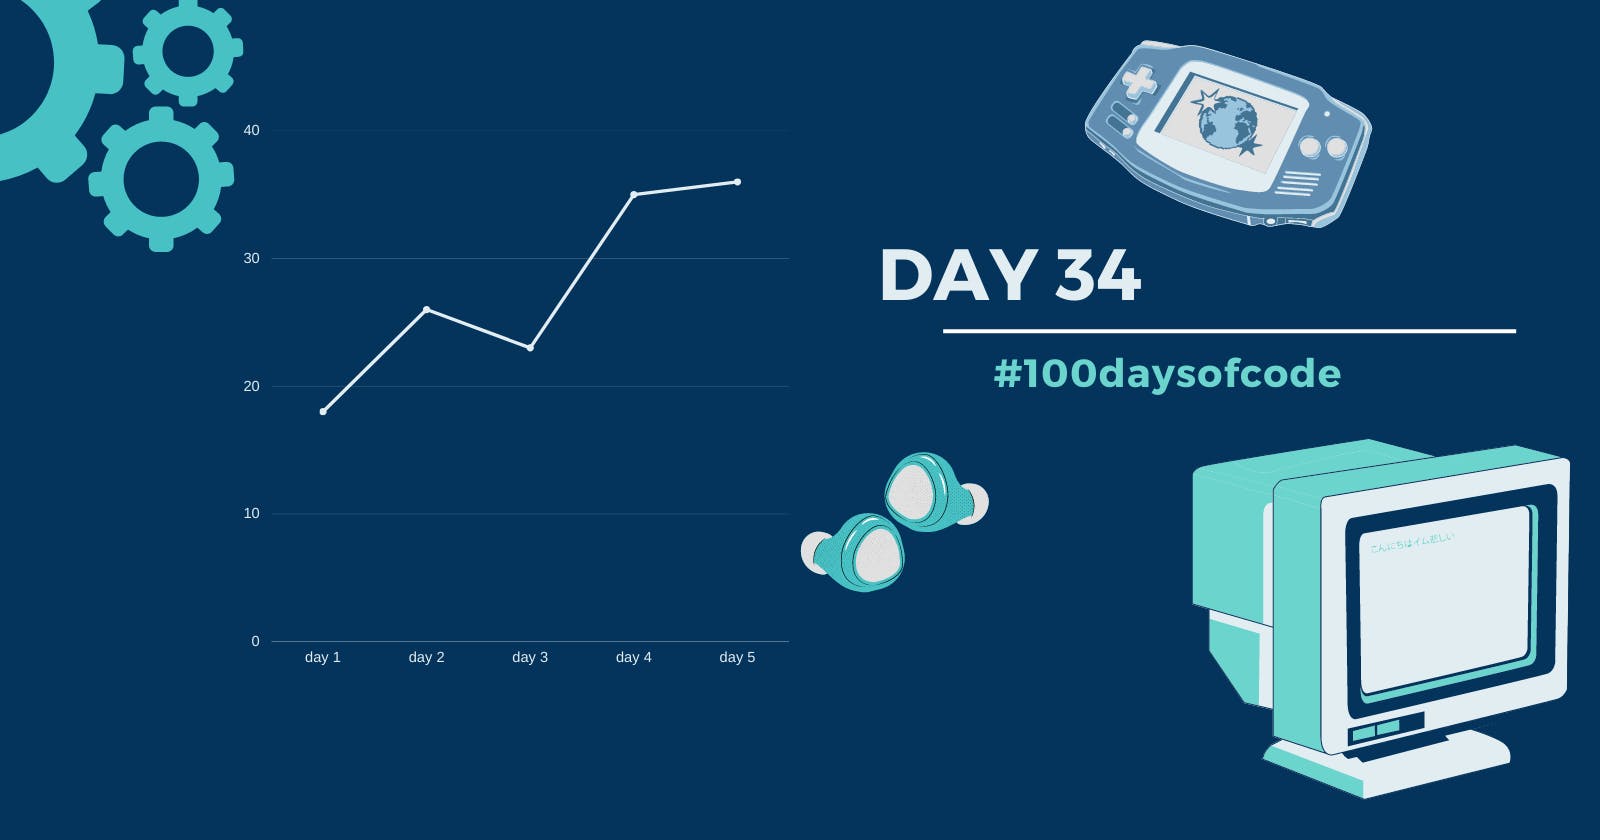 Day 34 in #100daysofcode challenge